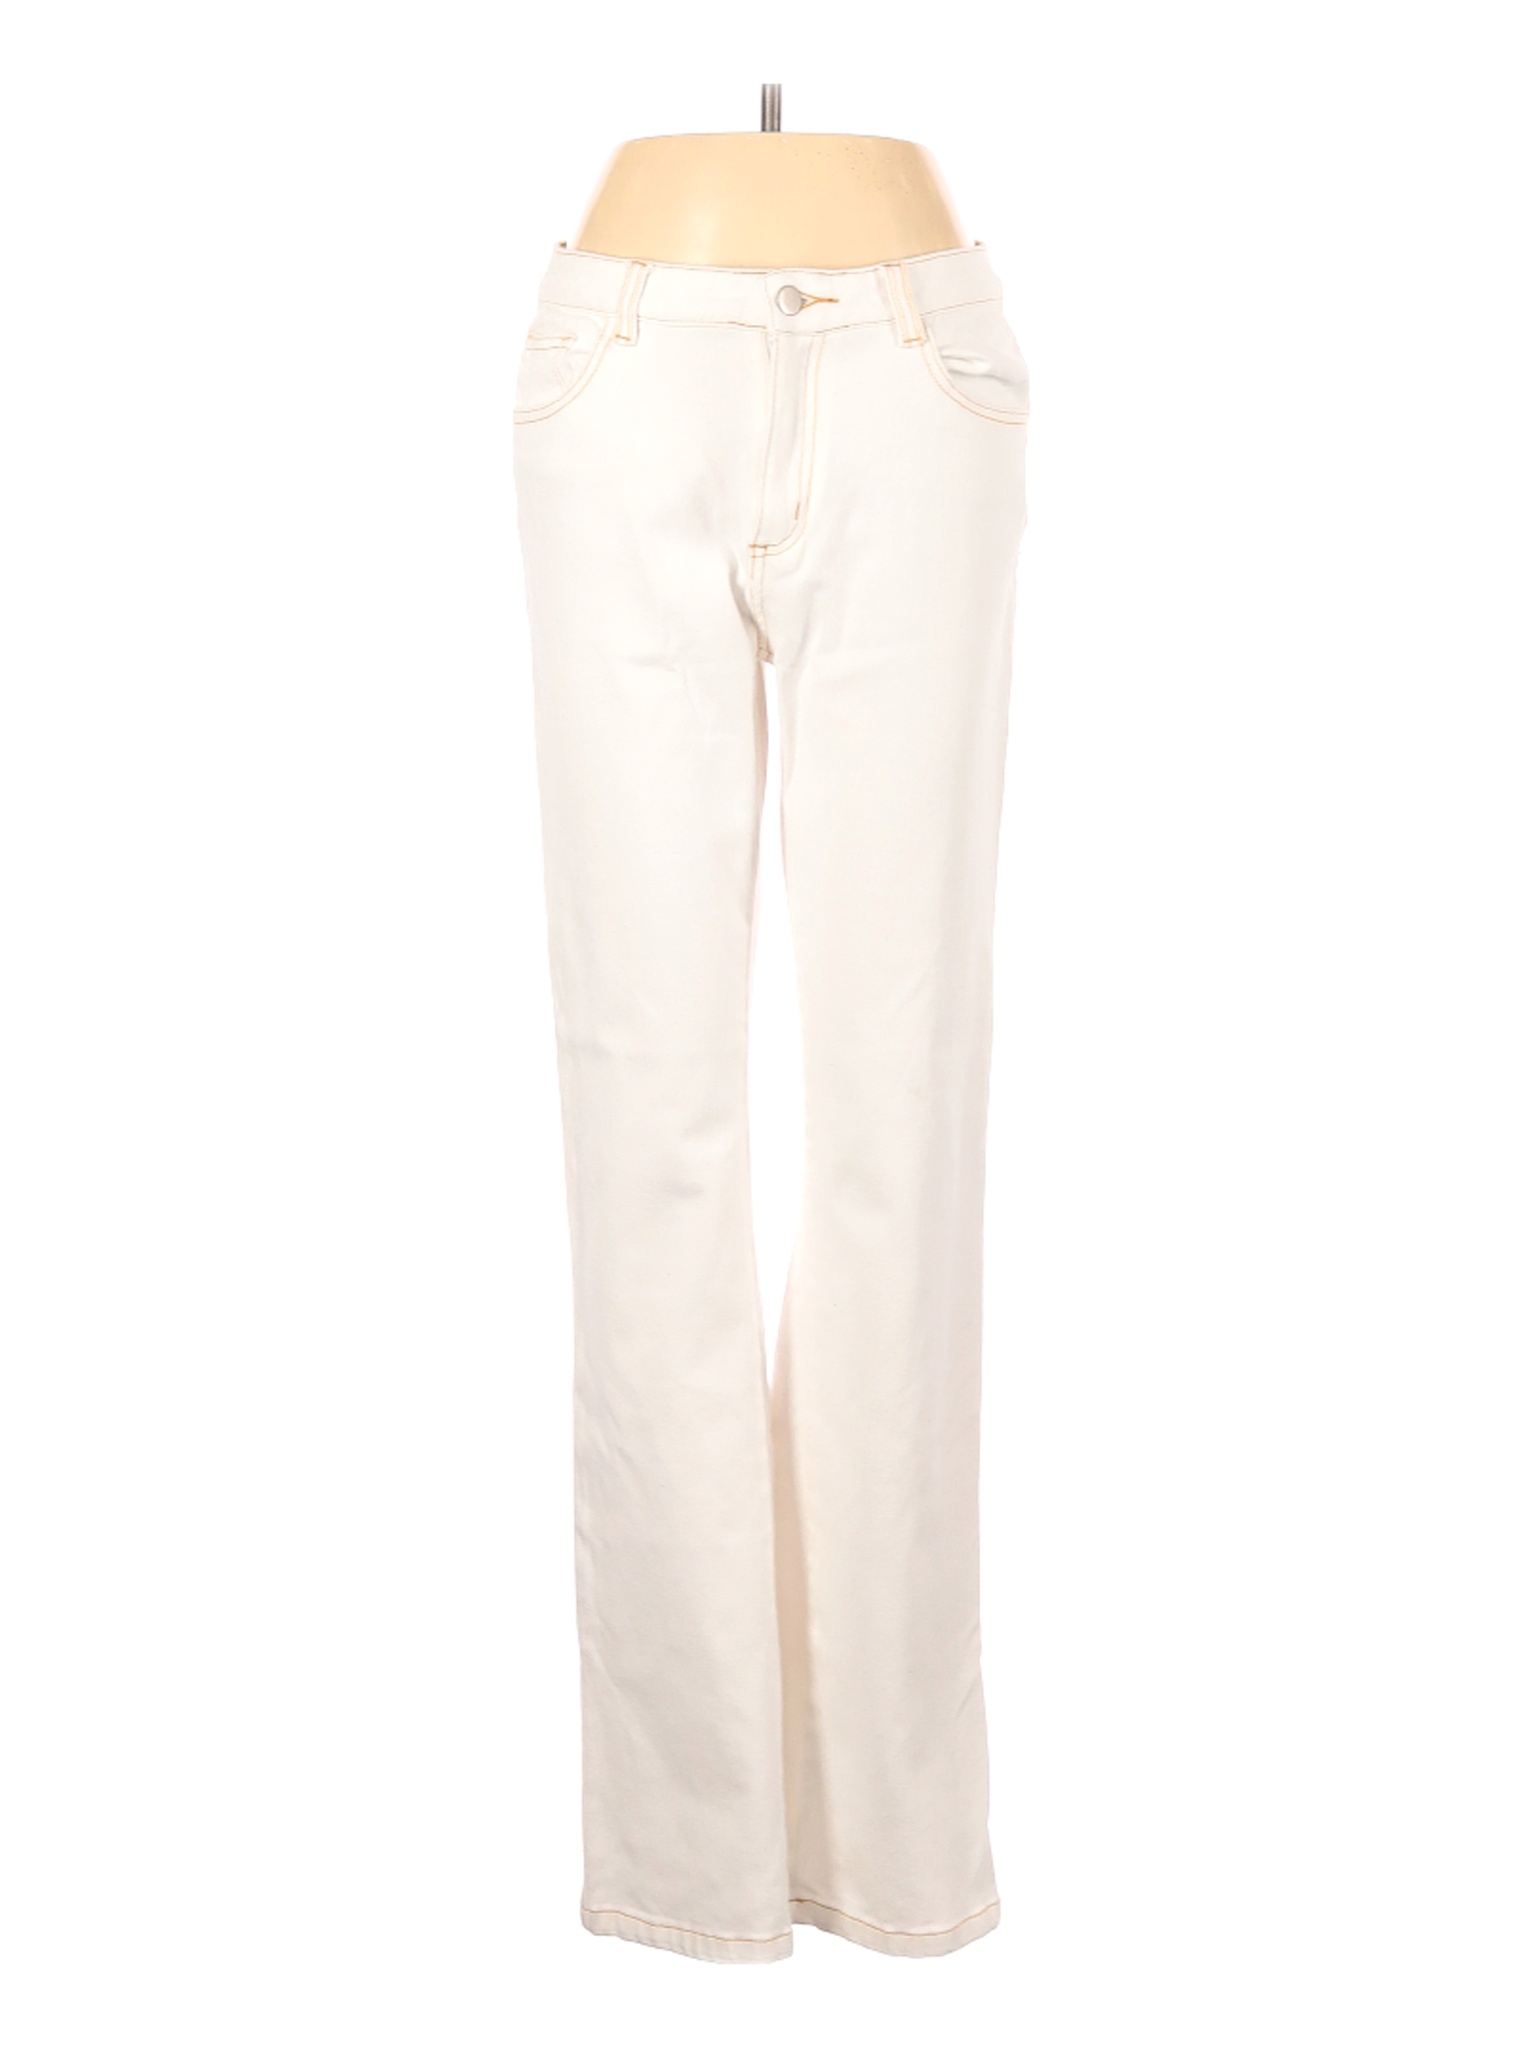 Boston Proper Women Ivory Jeans 6 | eBay